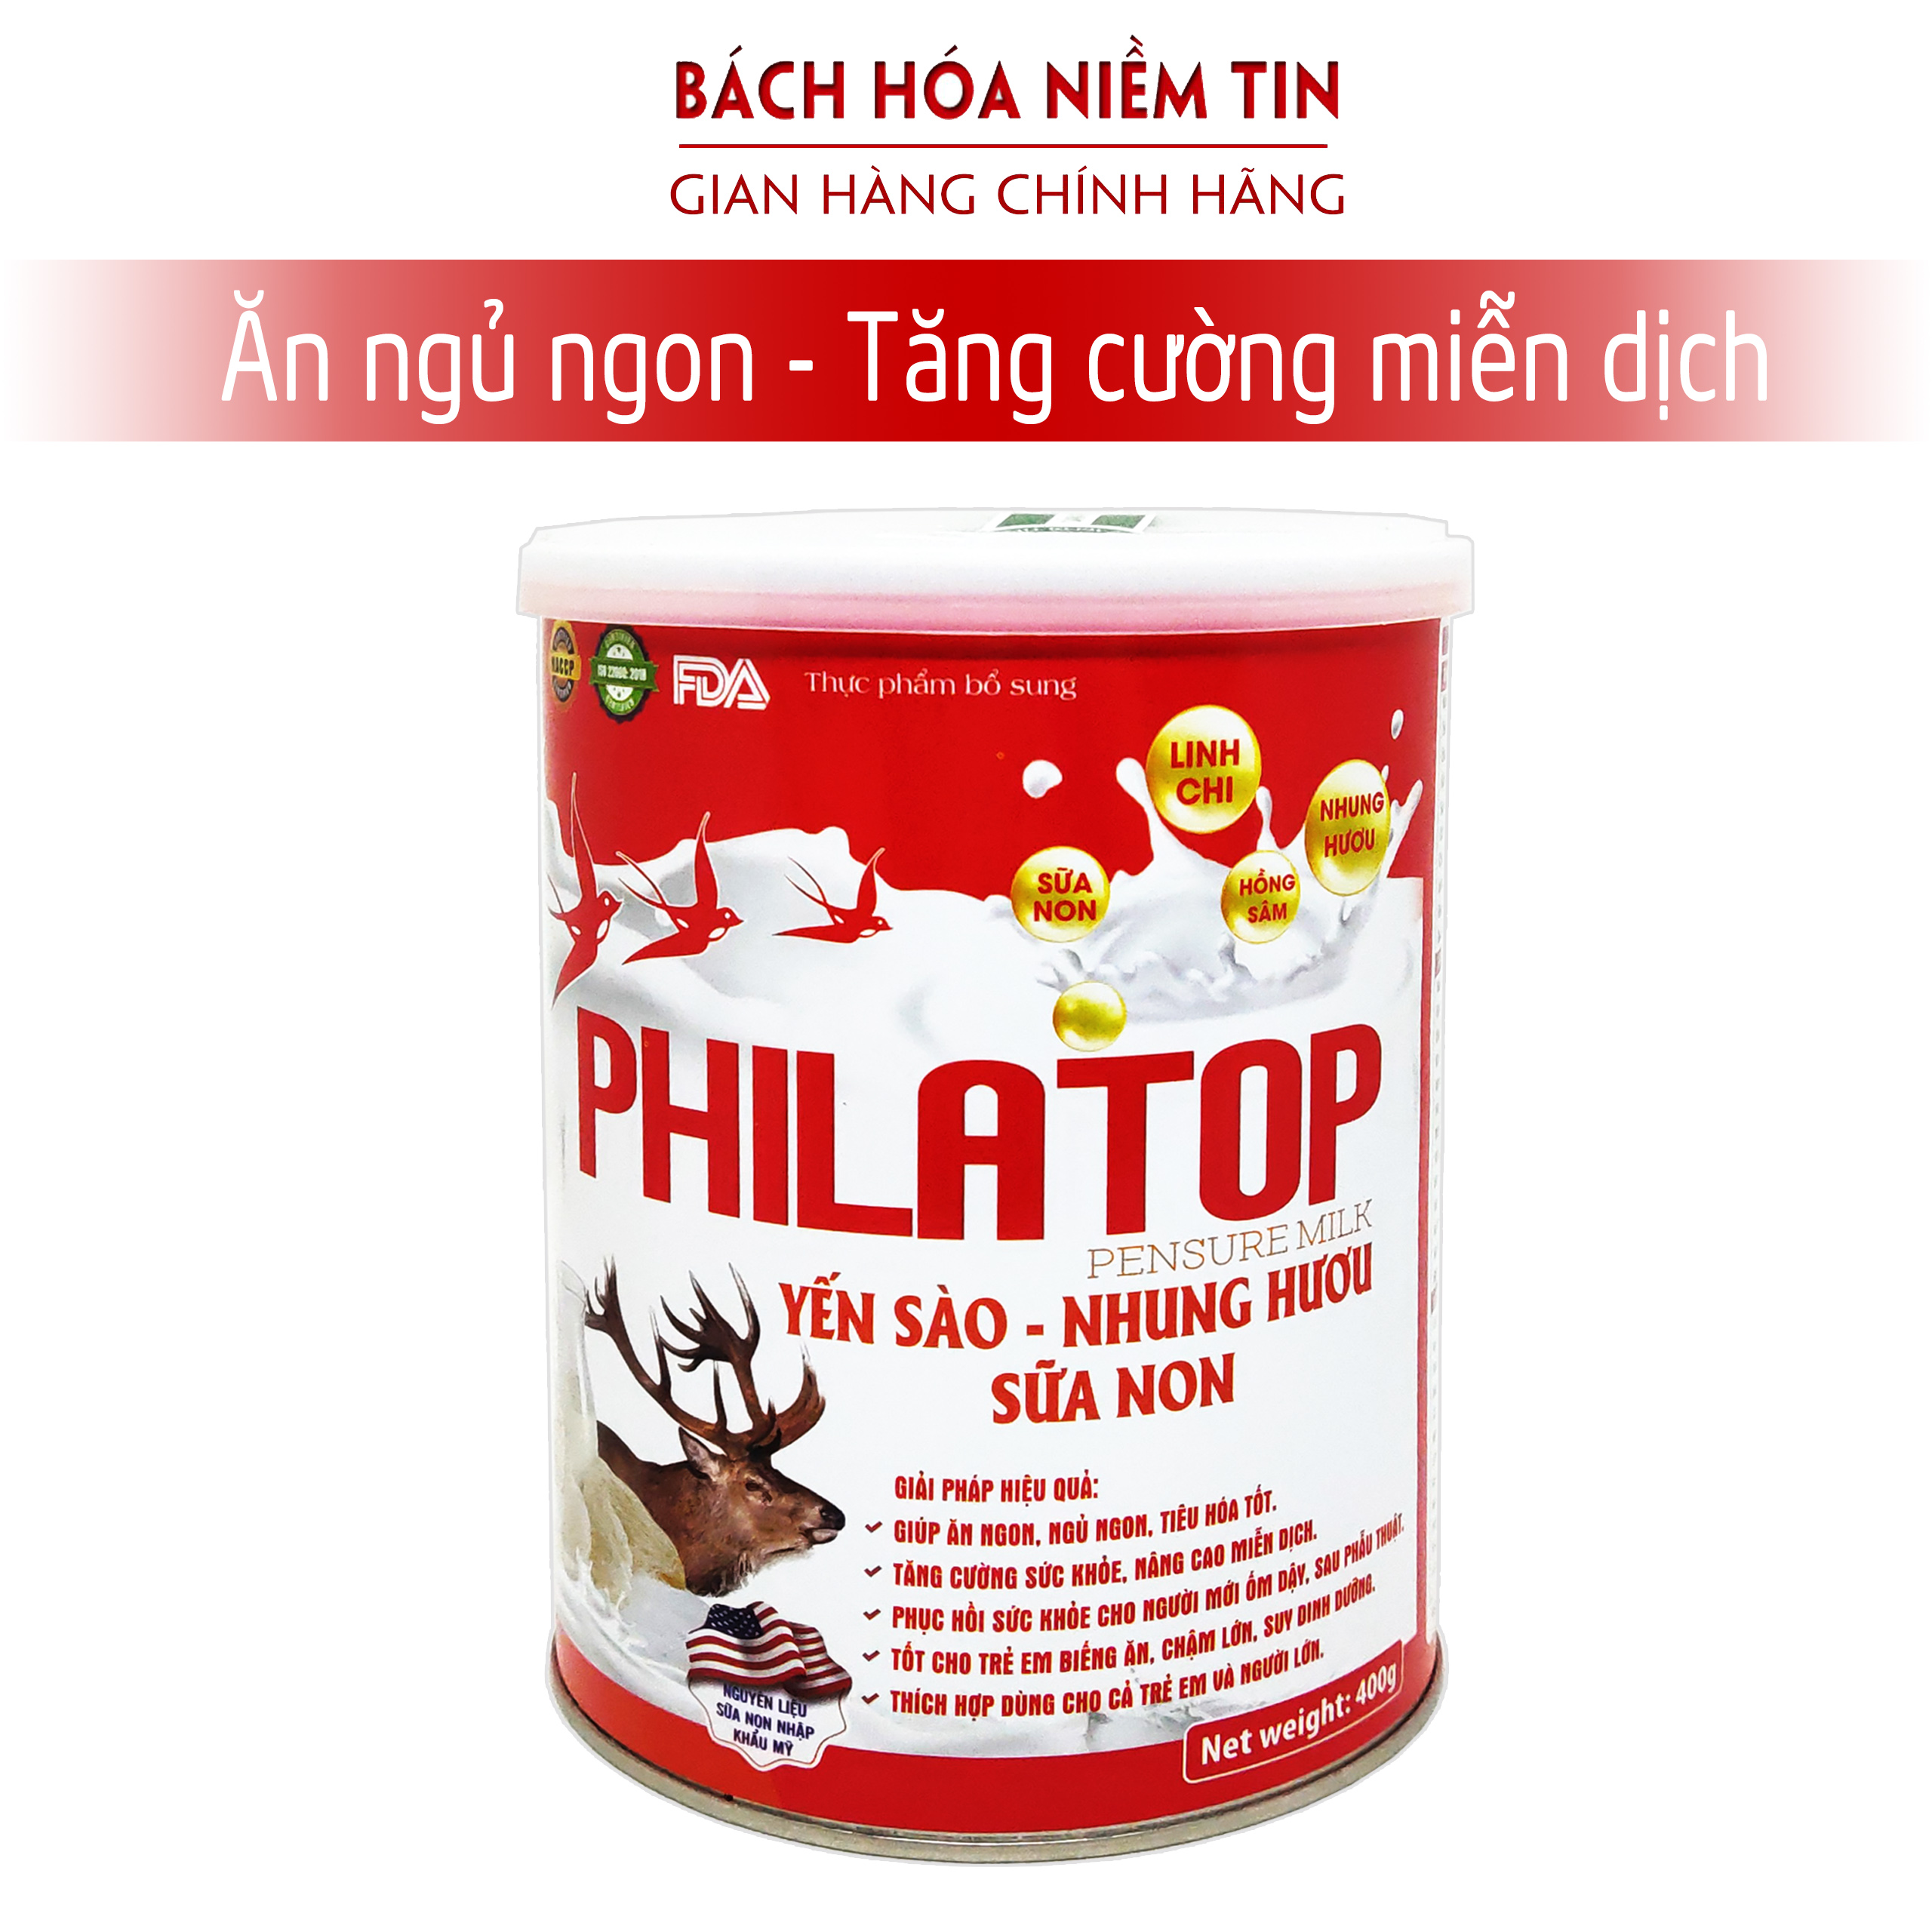 Sữa non Philatop Yến Sào Nhung hươu giúp bé ăn ngon ngủ ngon tăng sức khỏe sức đề kháng - Hộp 400g -hàng chính hãng